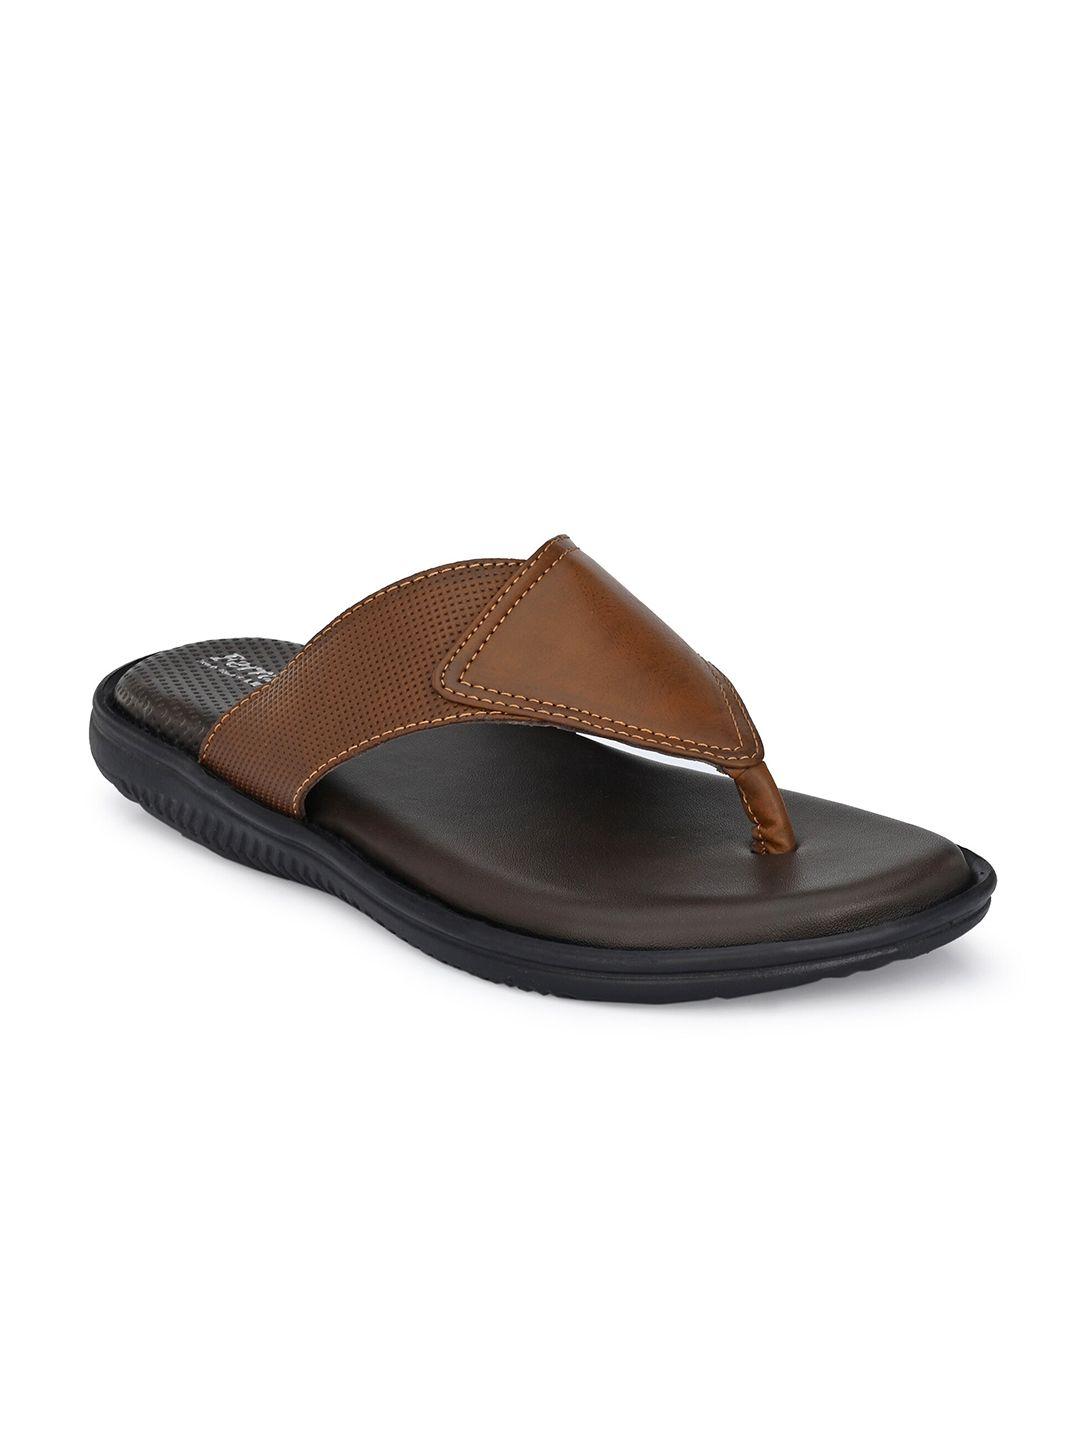 birgos men tan & black comfort sandals